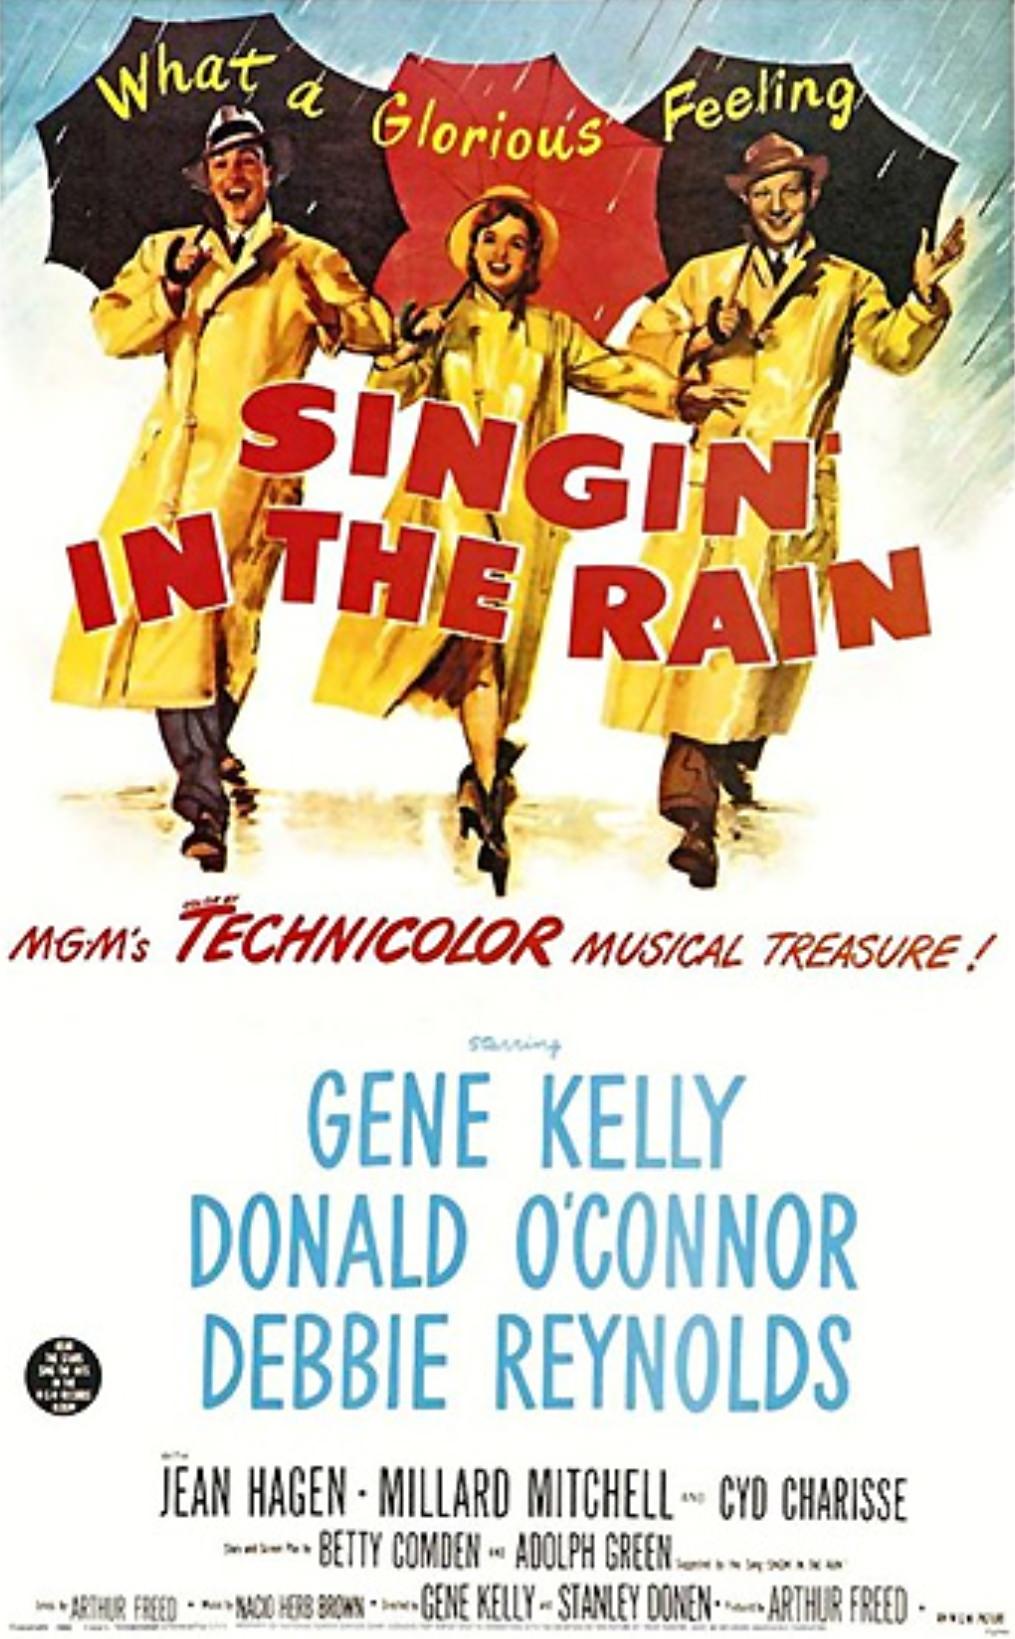 【音樂】電影【萬花嬉遊】《Singing in the rain》 在雨中唱歌 | 歌曲歌詞、翻譯